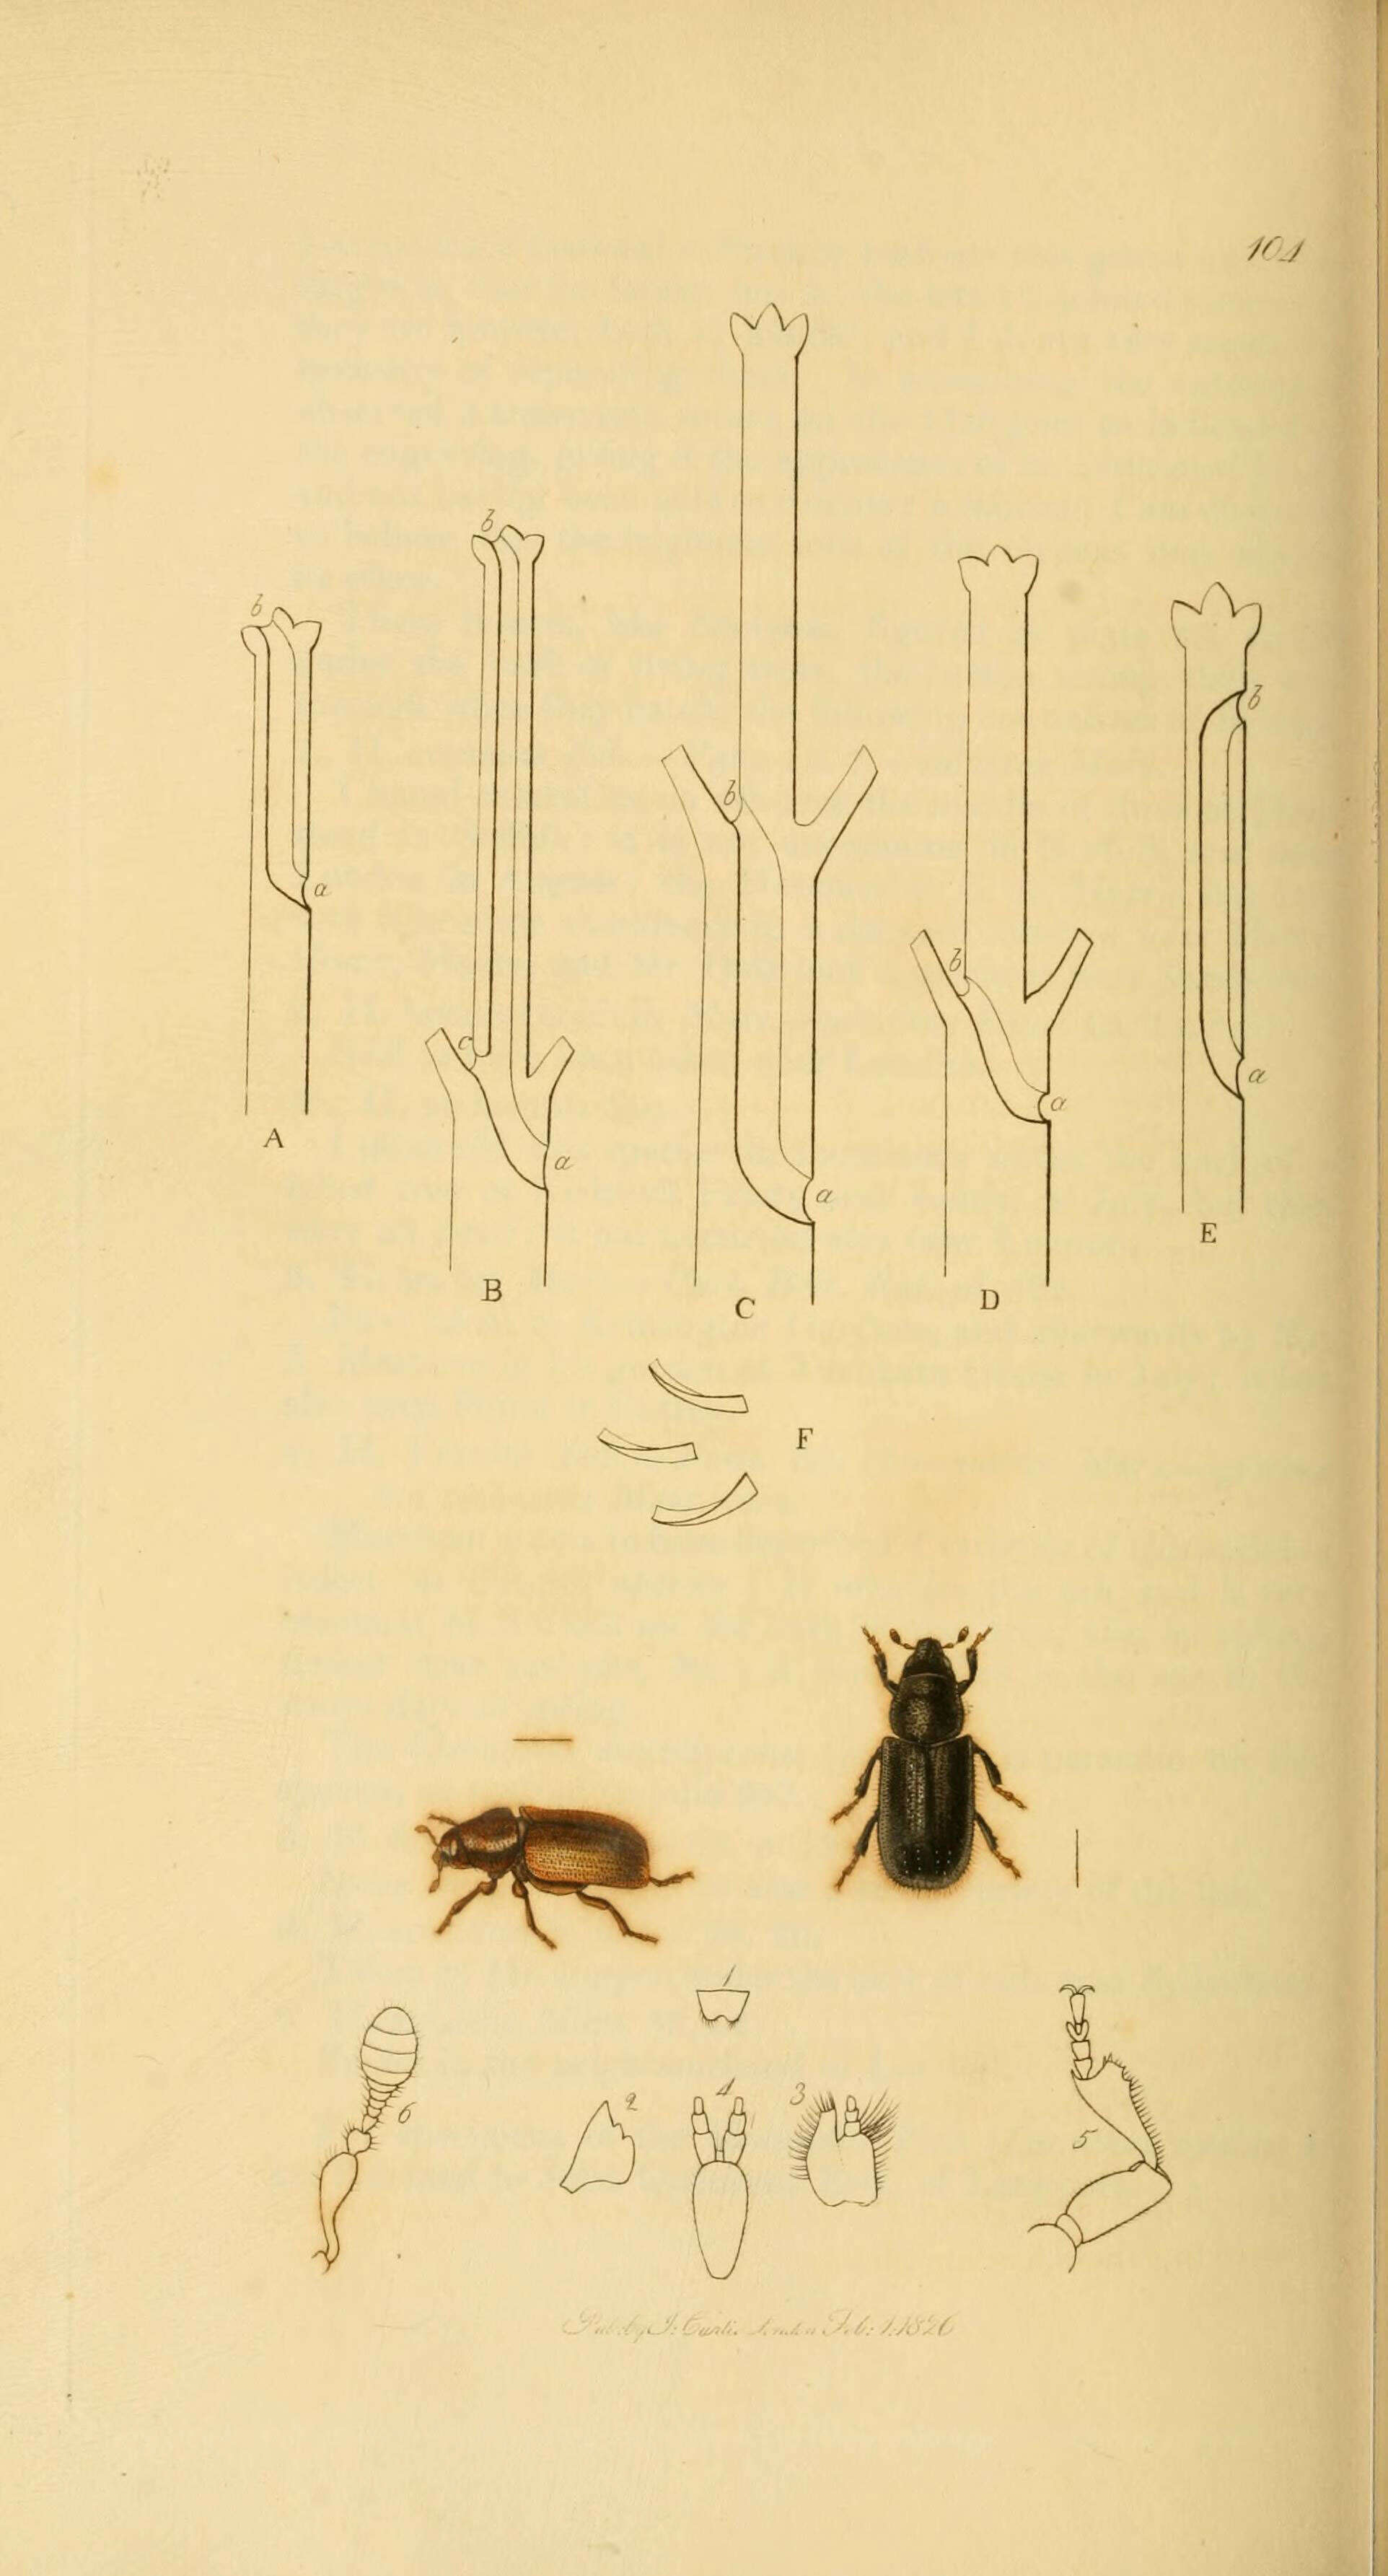 Sivun Hylurgus piniperda Dejean 1821 kuva